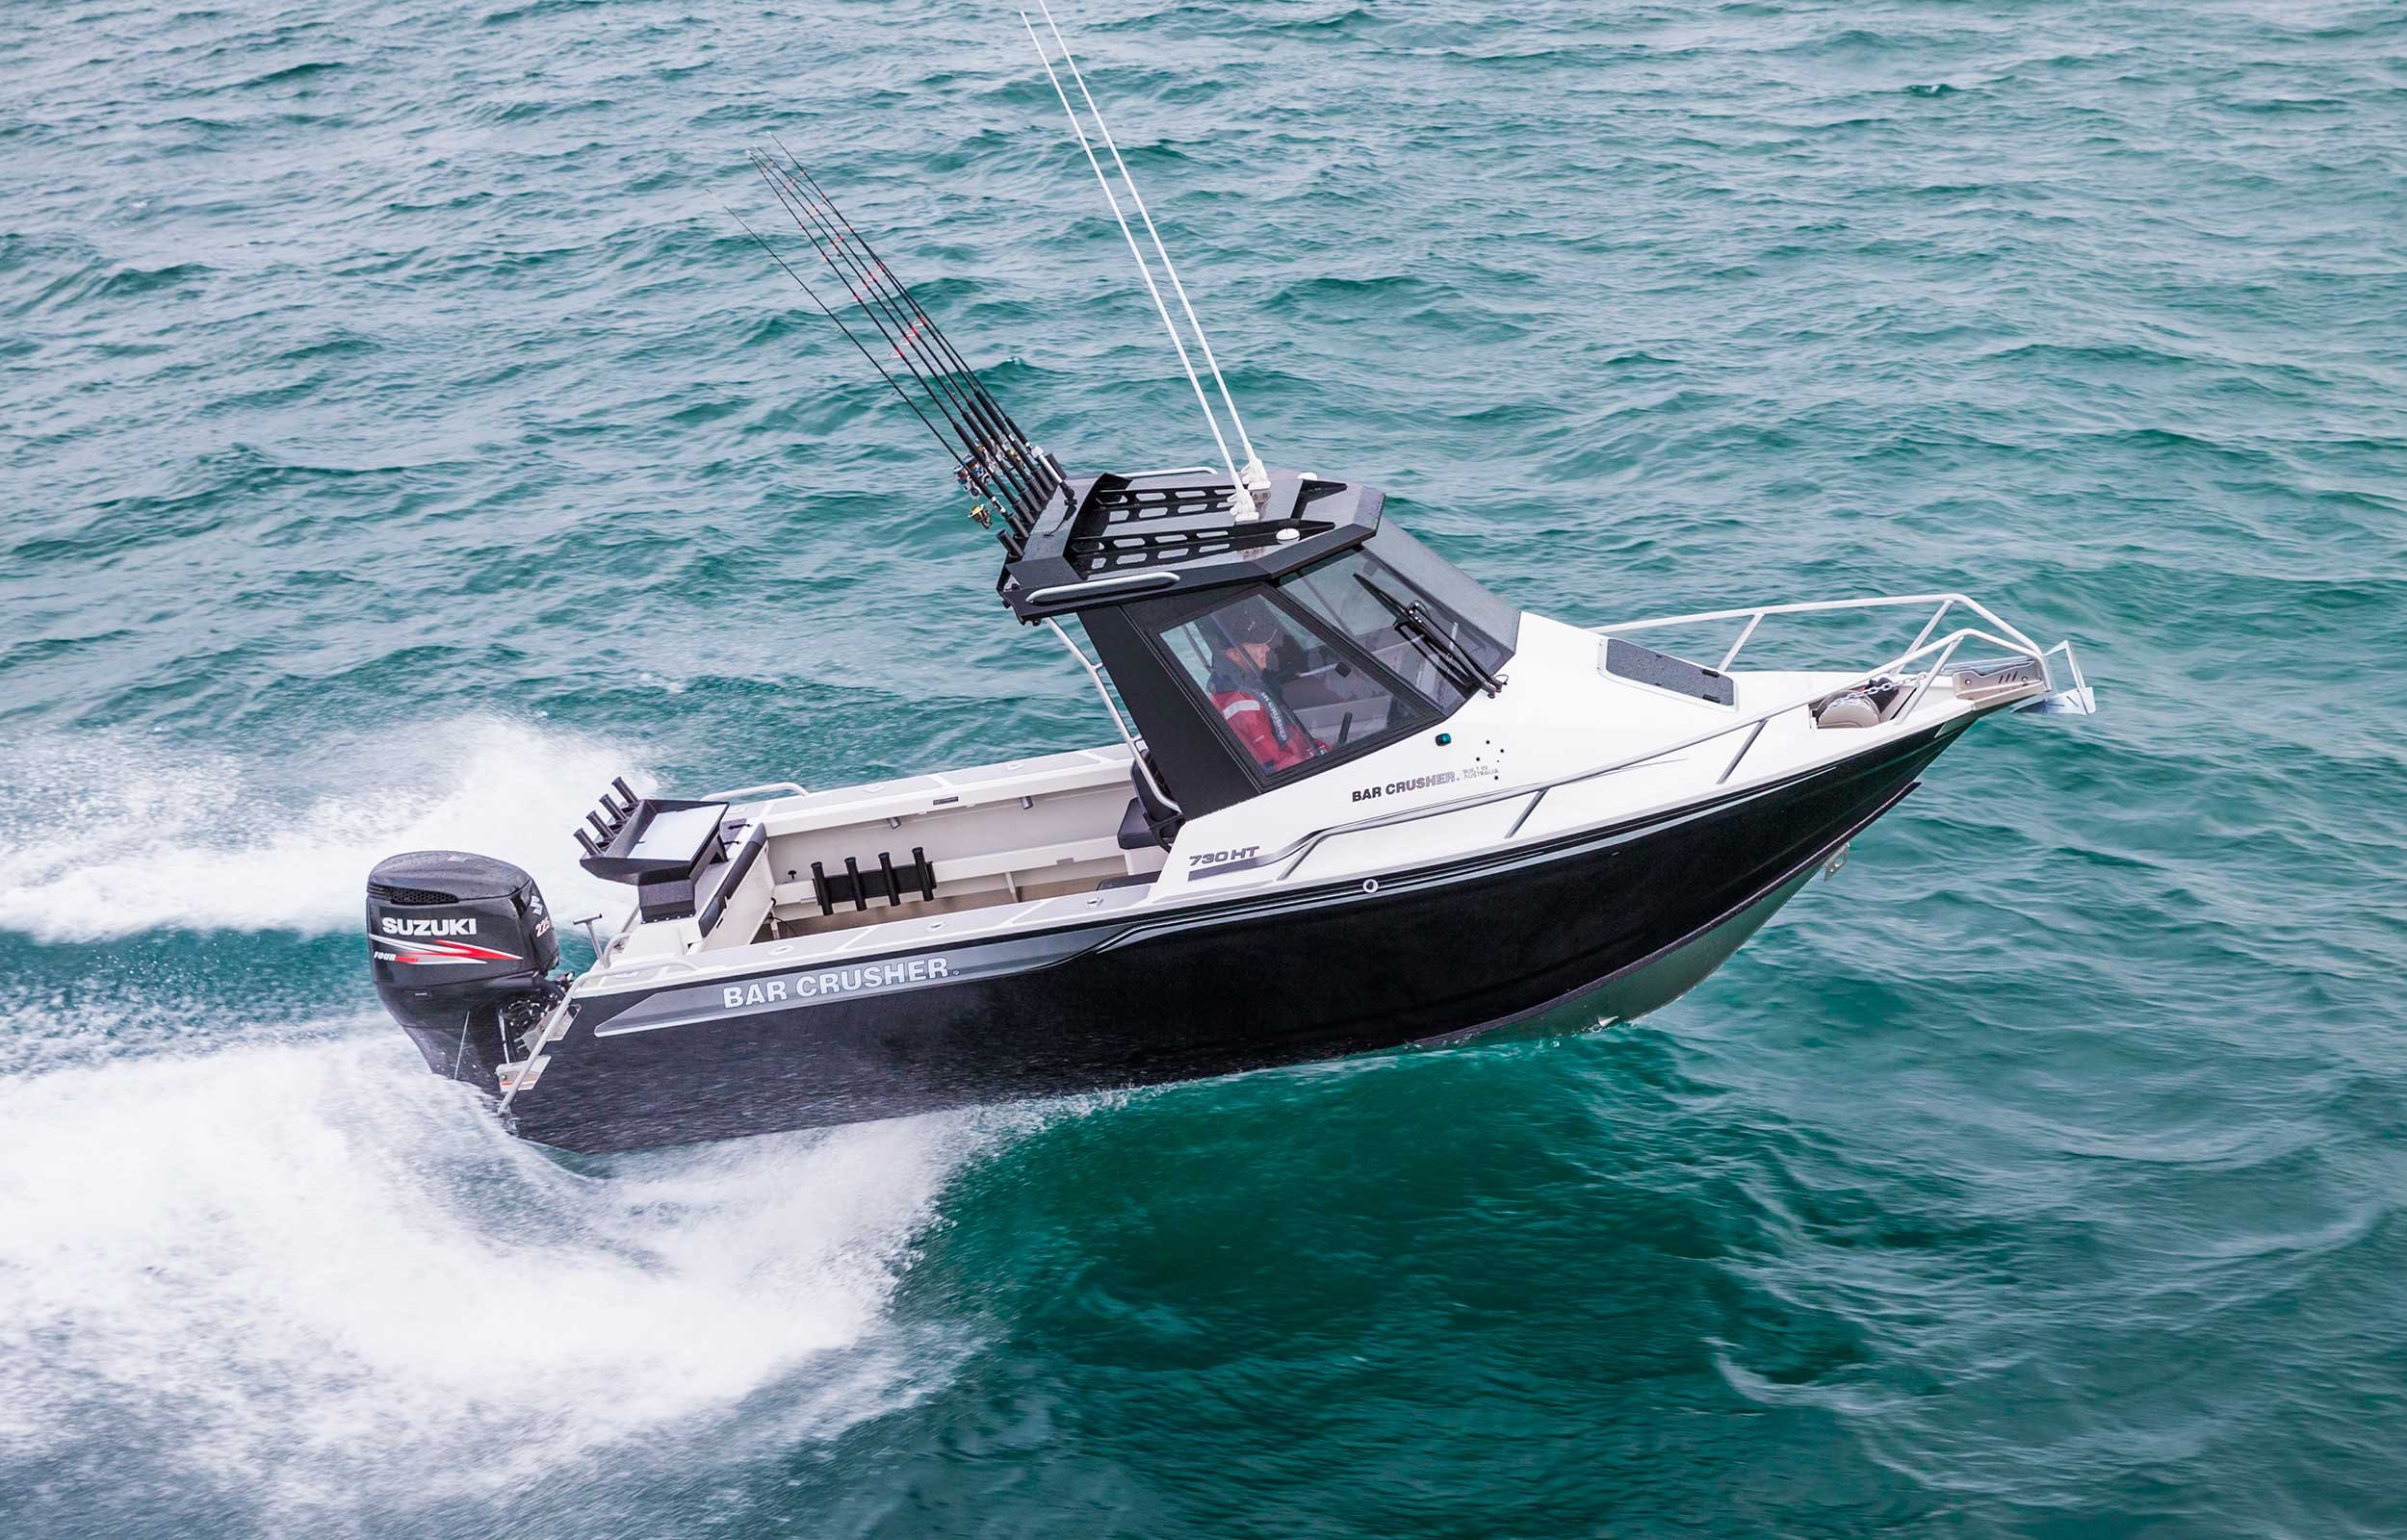 models-bar-crusher-730ht-plate-aluminium-fishing-boat-web-1